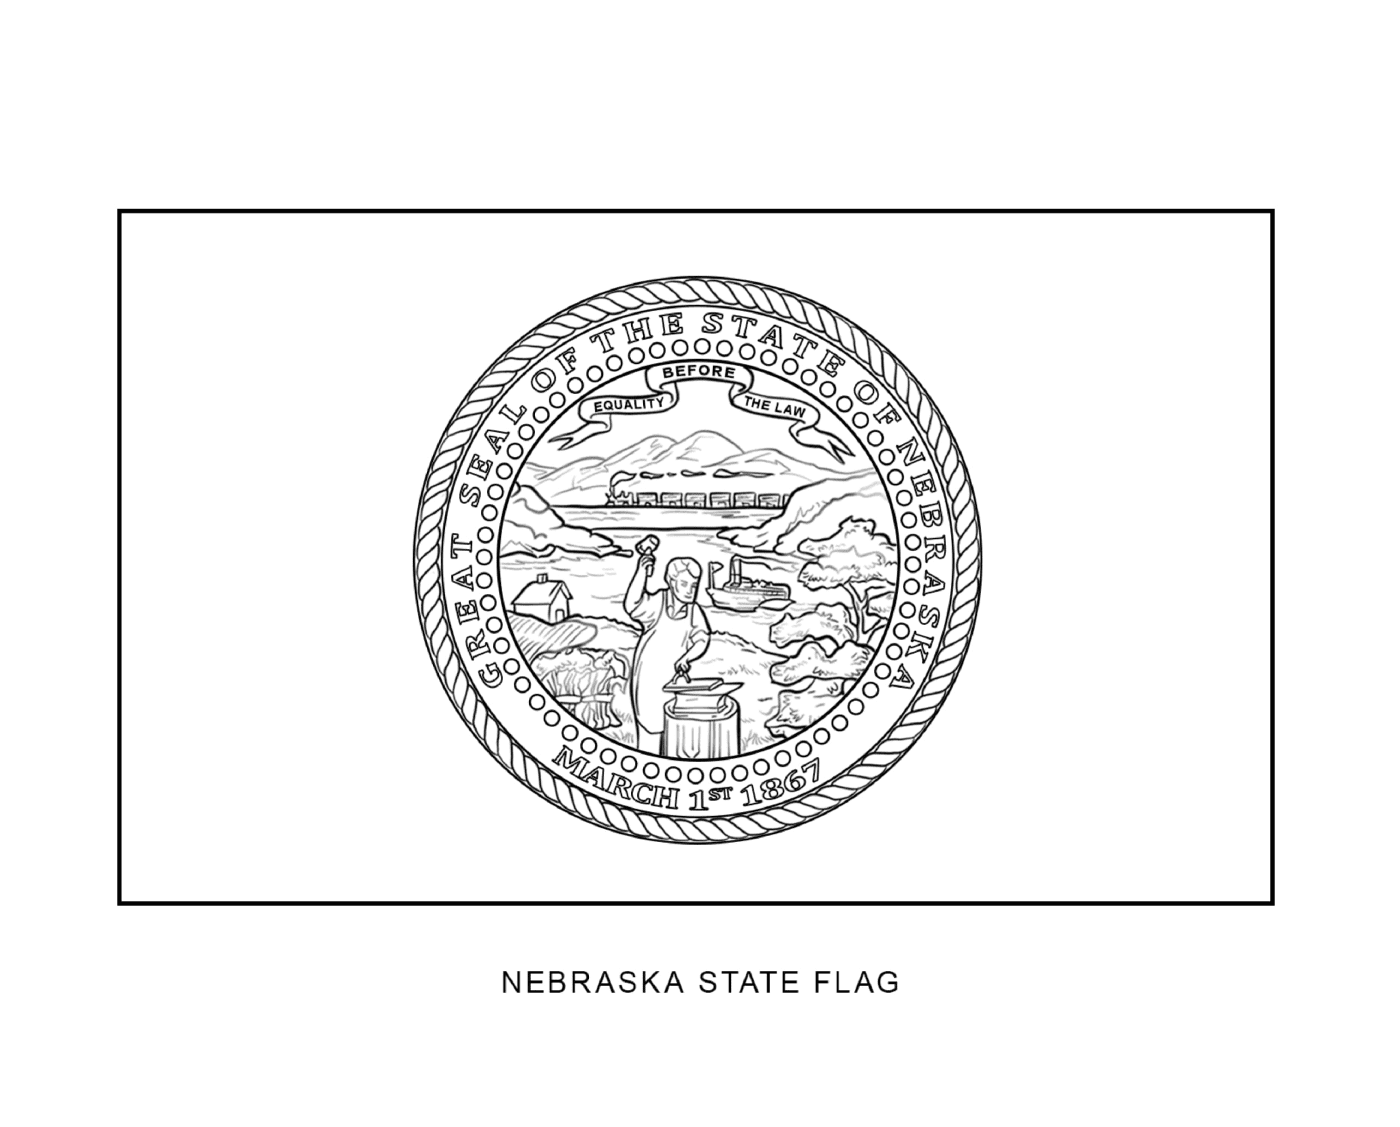  नेब्रास्का राज्य का फ्लैग काला और सफेद रंग में किया हुआ है 